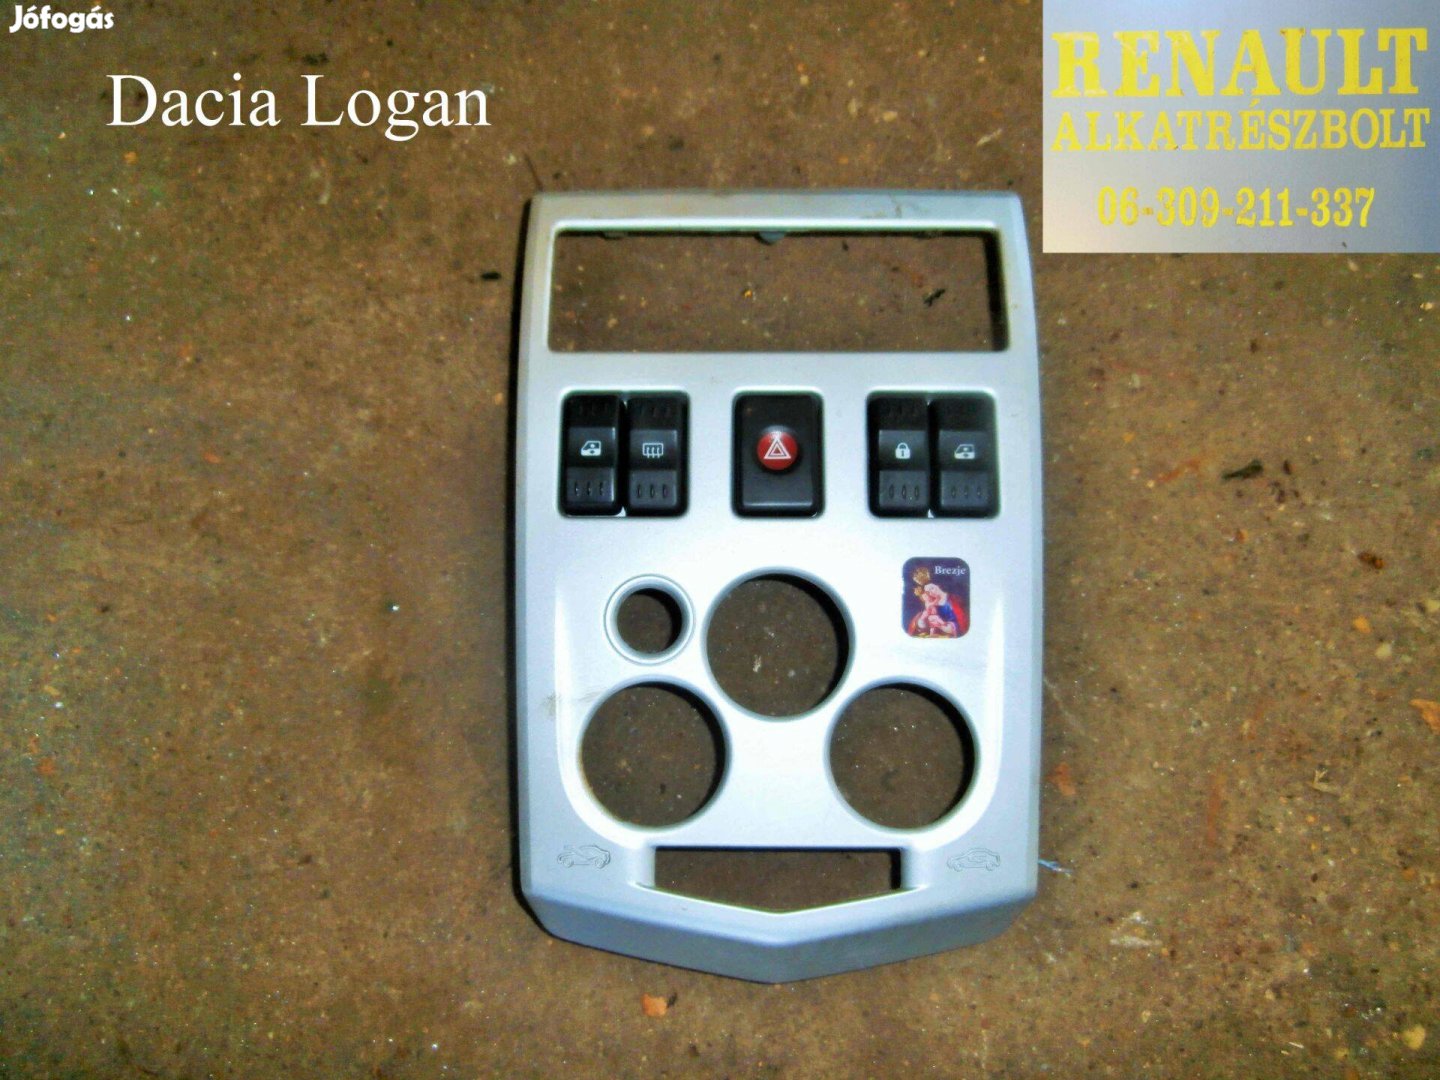 Dacia Logan műszerfal előlap, panel